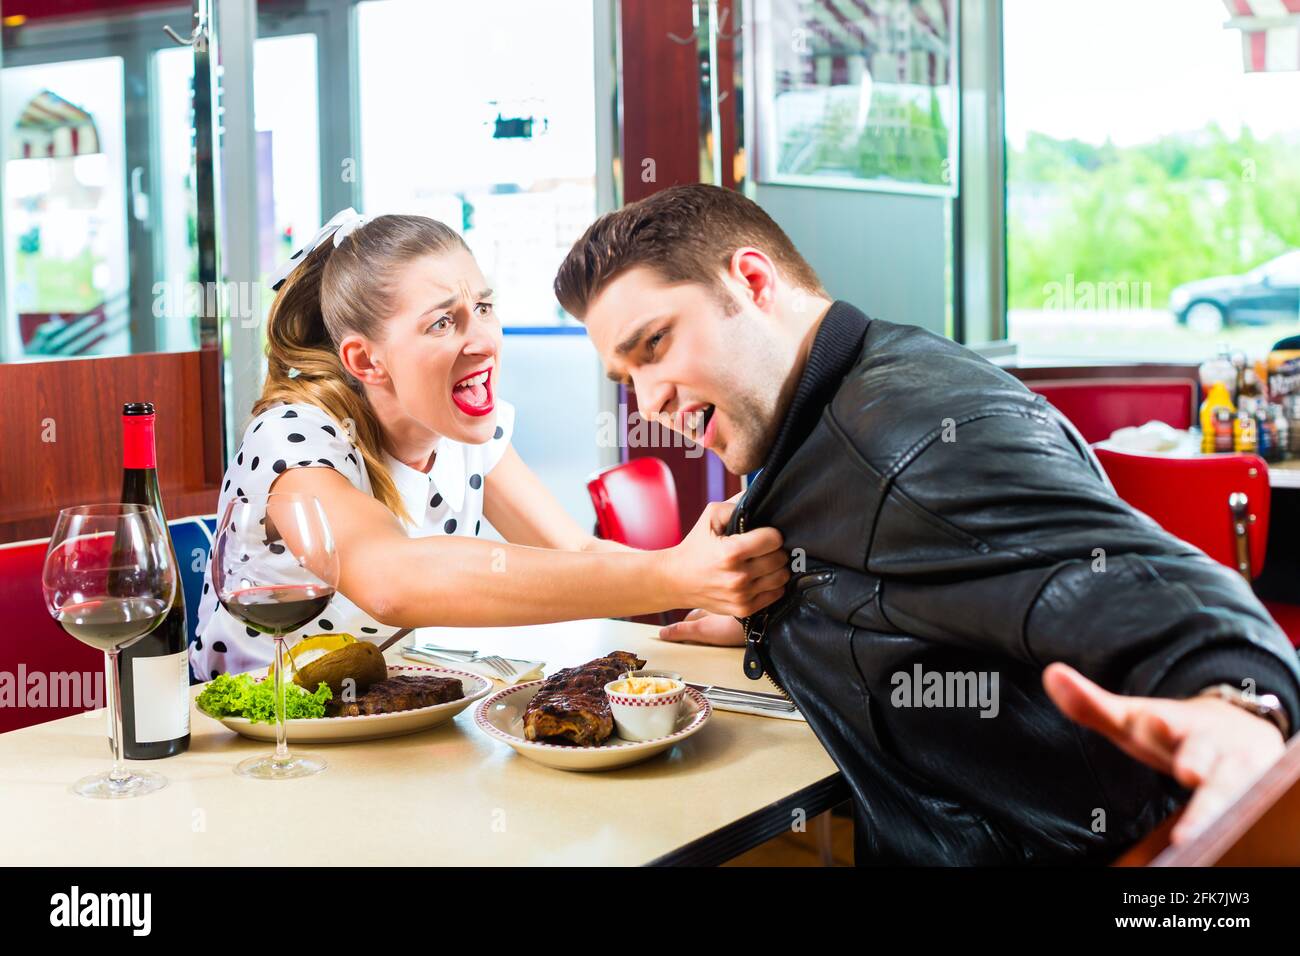 Jeune couple eating fast food et de boire du vin rouge dans un fast food American retro diner soutient Banque D'Images